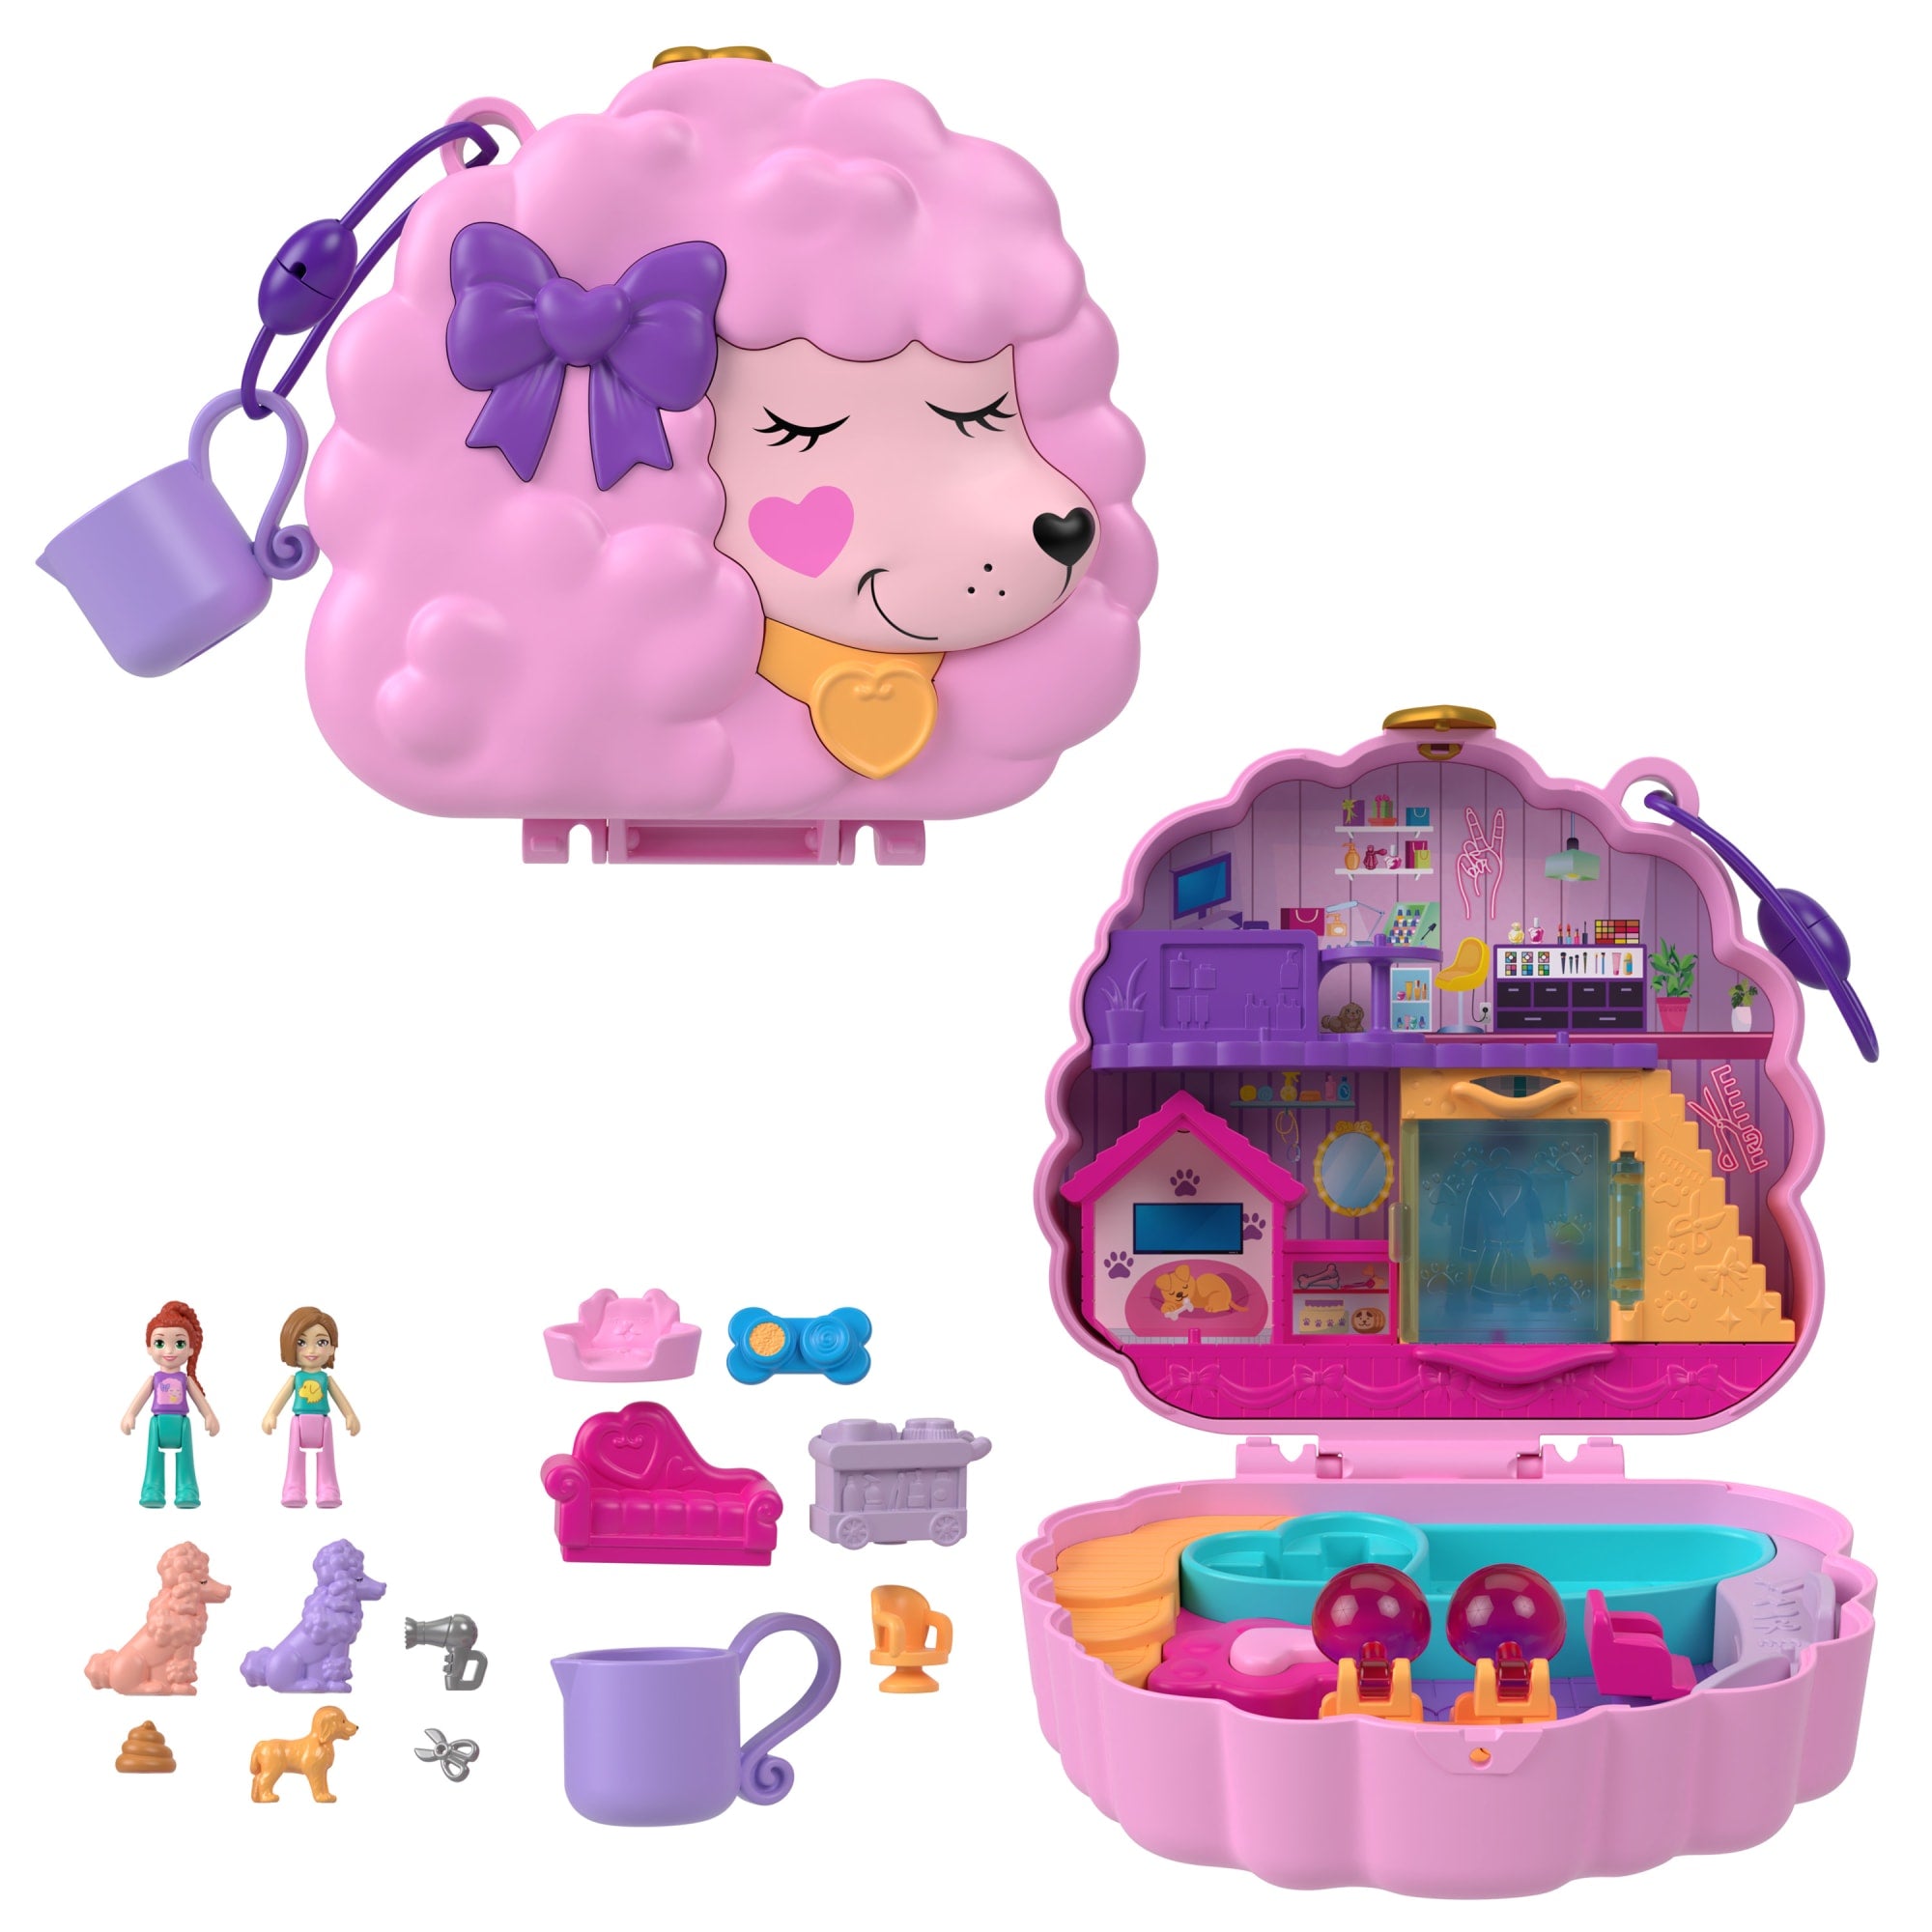 jenich Lot de 4 accessoires miniatures pour maison de poupée